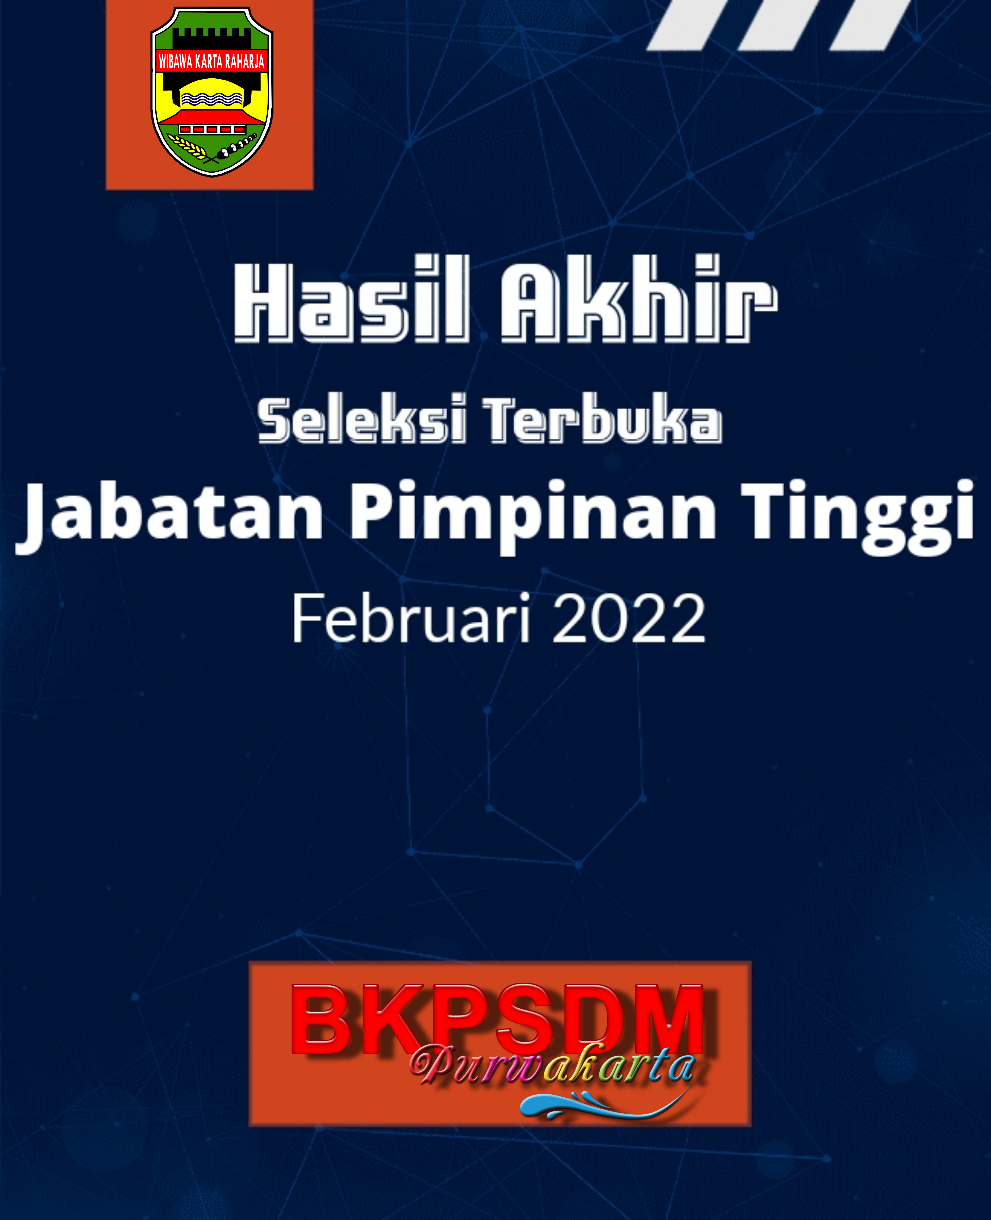 Hasil Akhir Seleksi Terbuka Jabatan Pimpinan Tinggi Pratama, Februari 2022